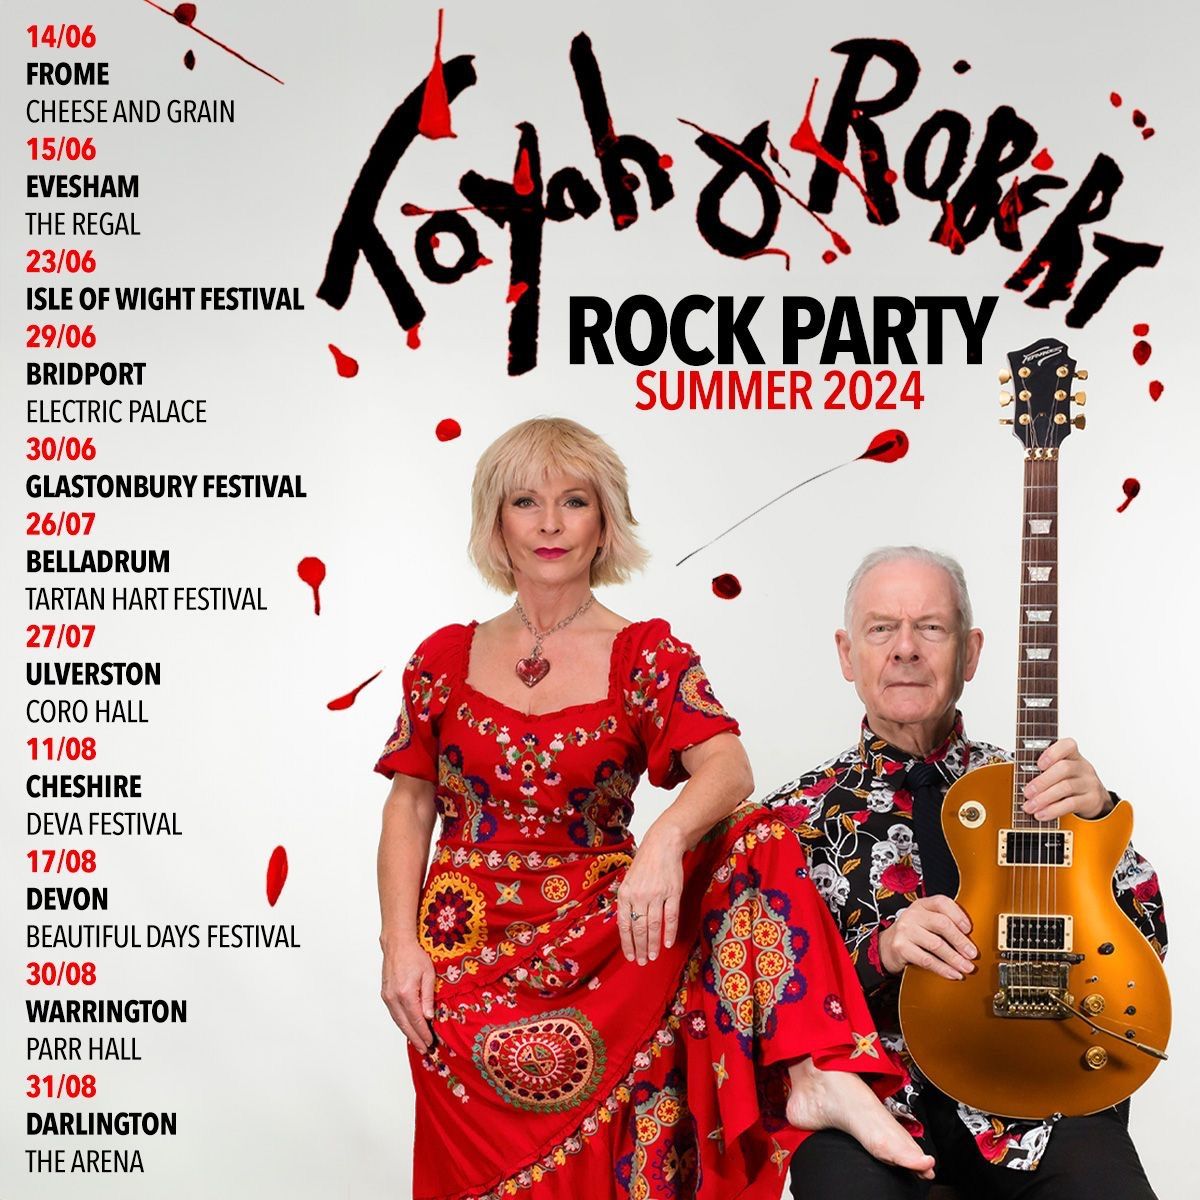 Toyah & Robert\u2019s Rock Party - Bridport Electric Palace